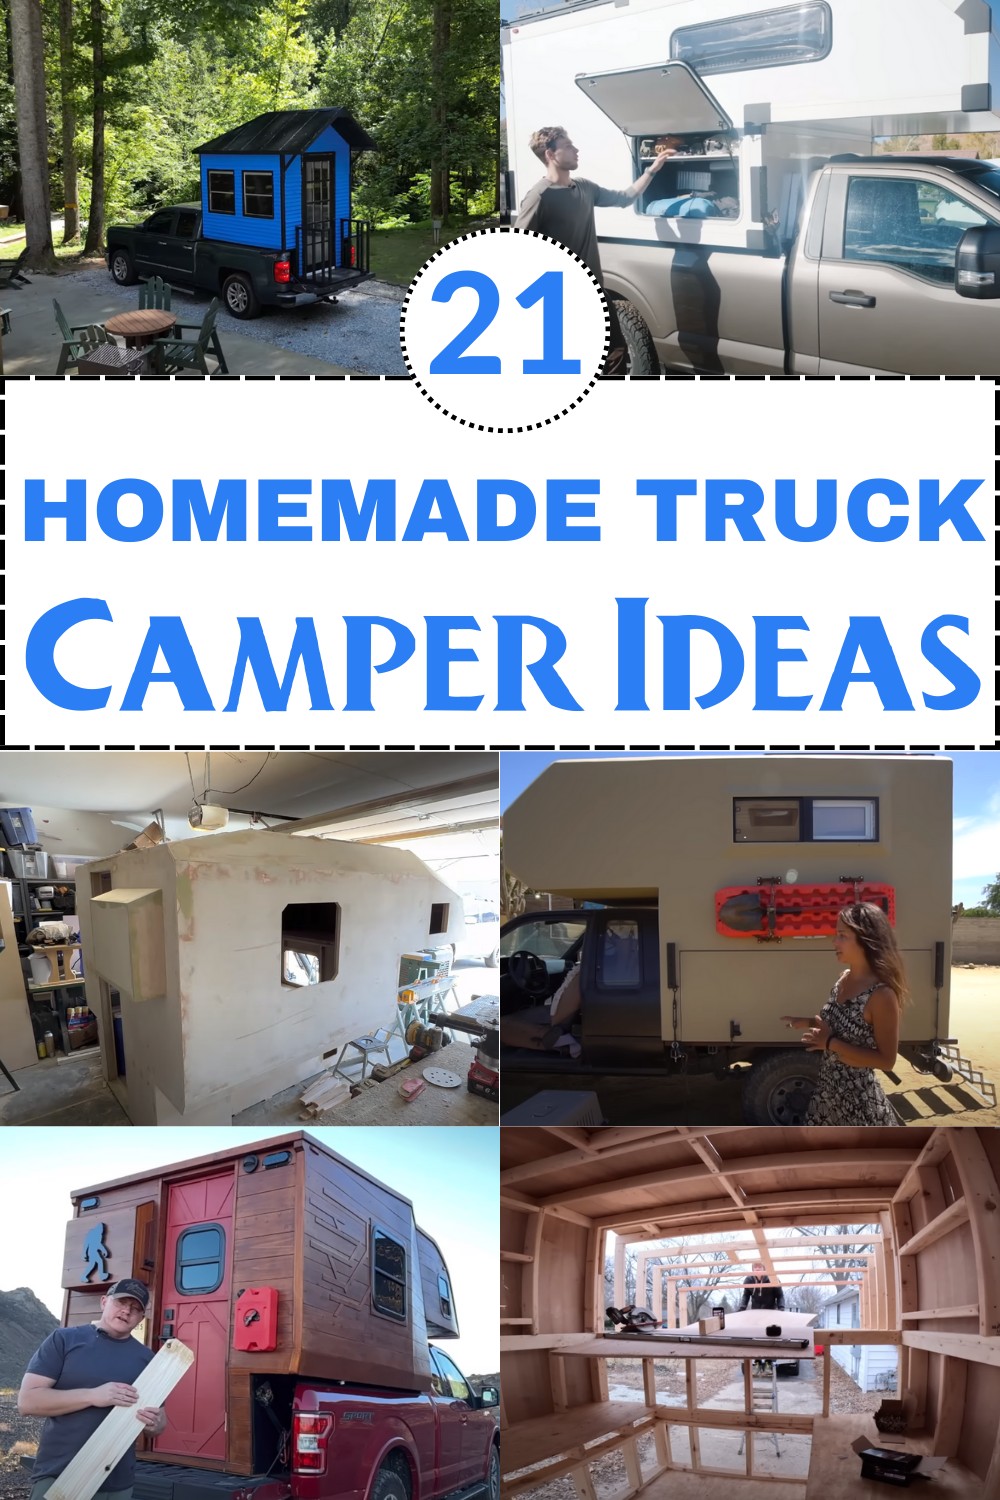 Homemade Truck Camper Ideas